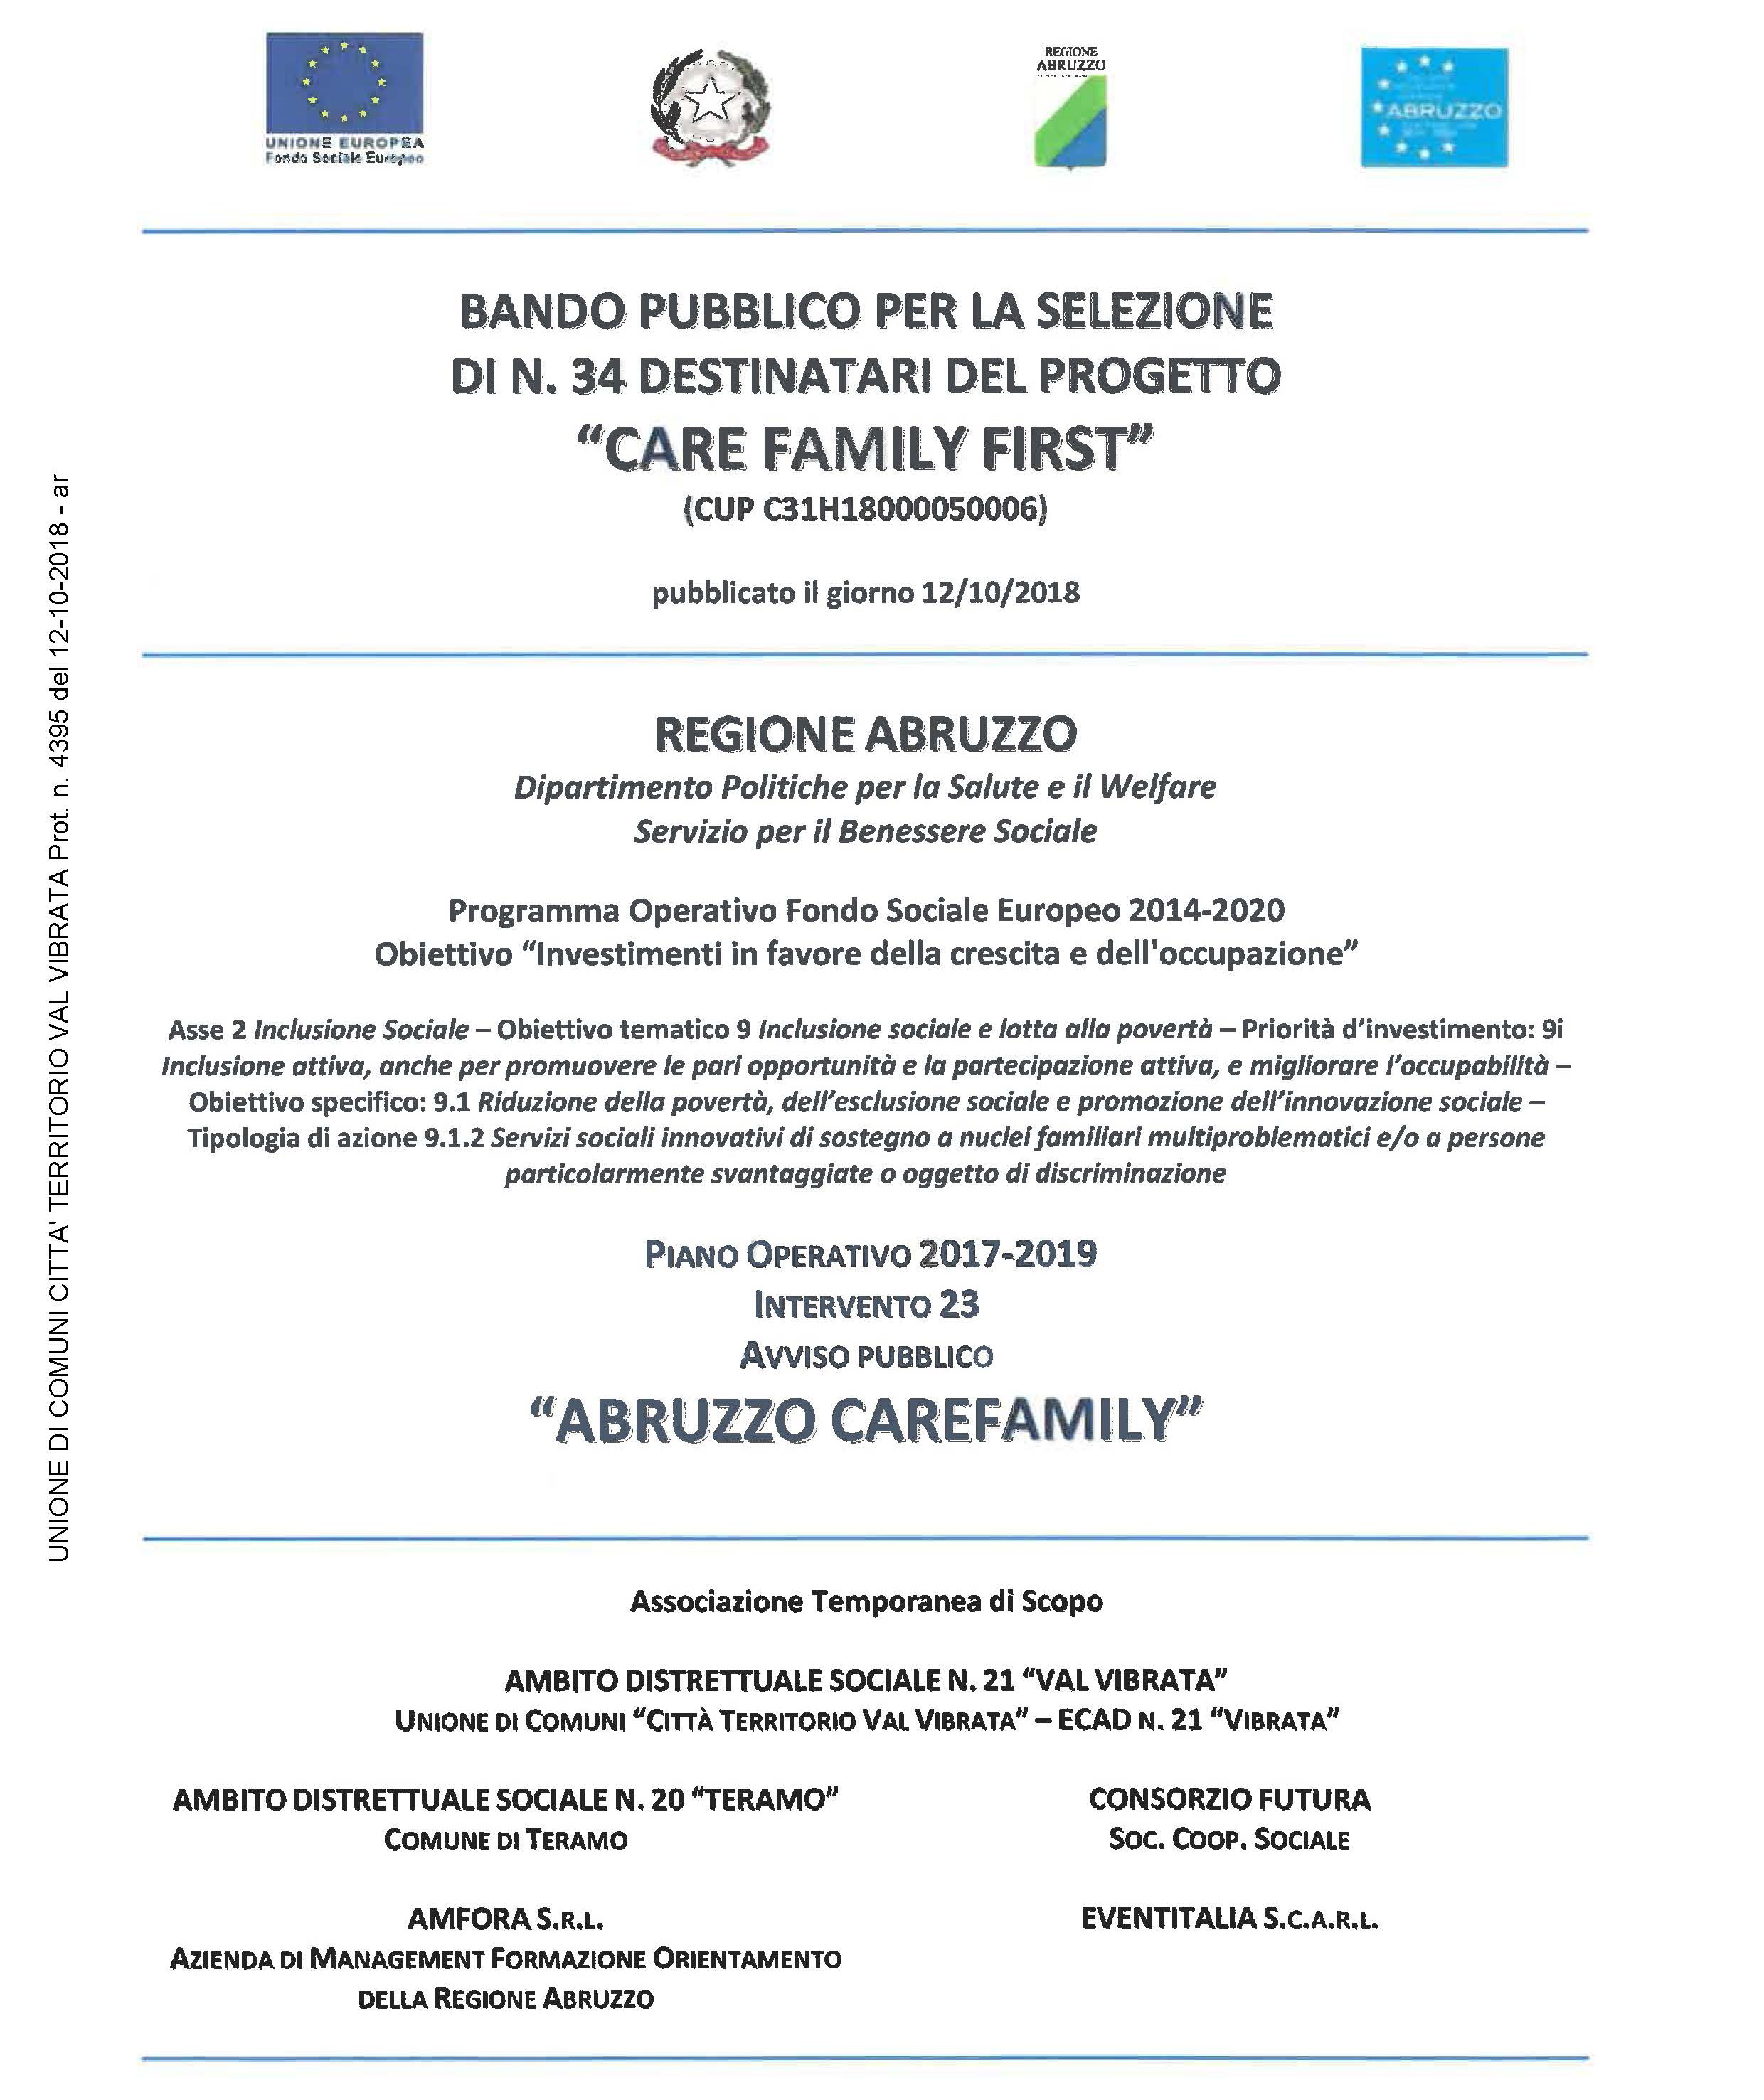 BANDO PUBBLICO "CARE FAMILY FIRST"